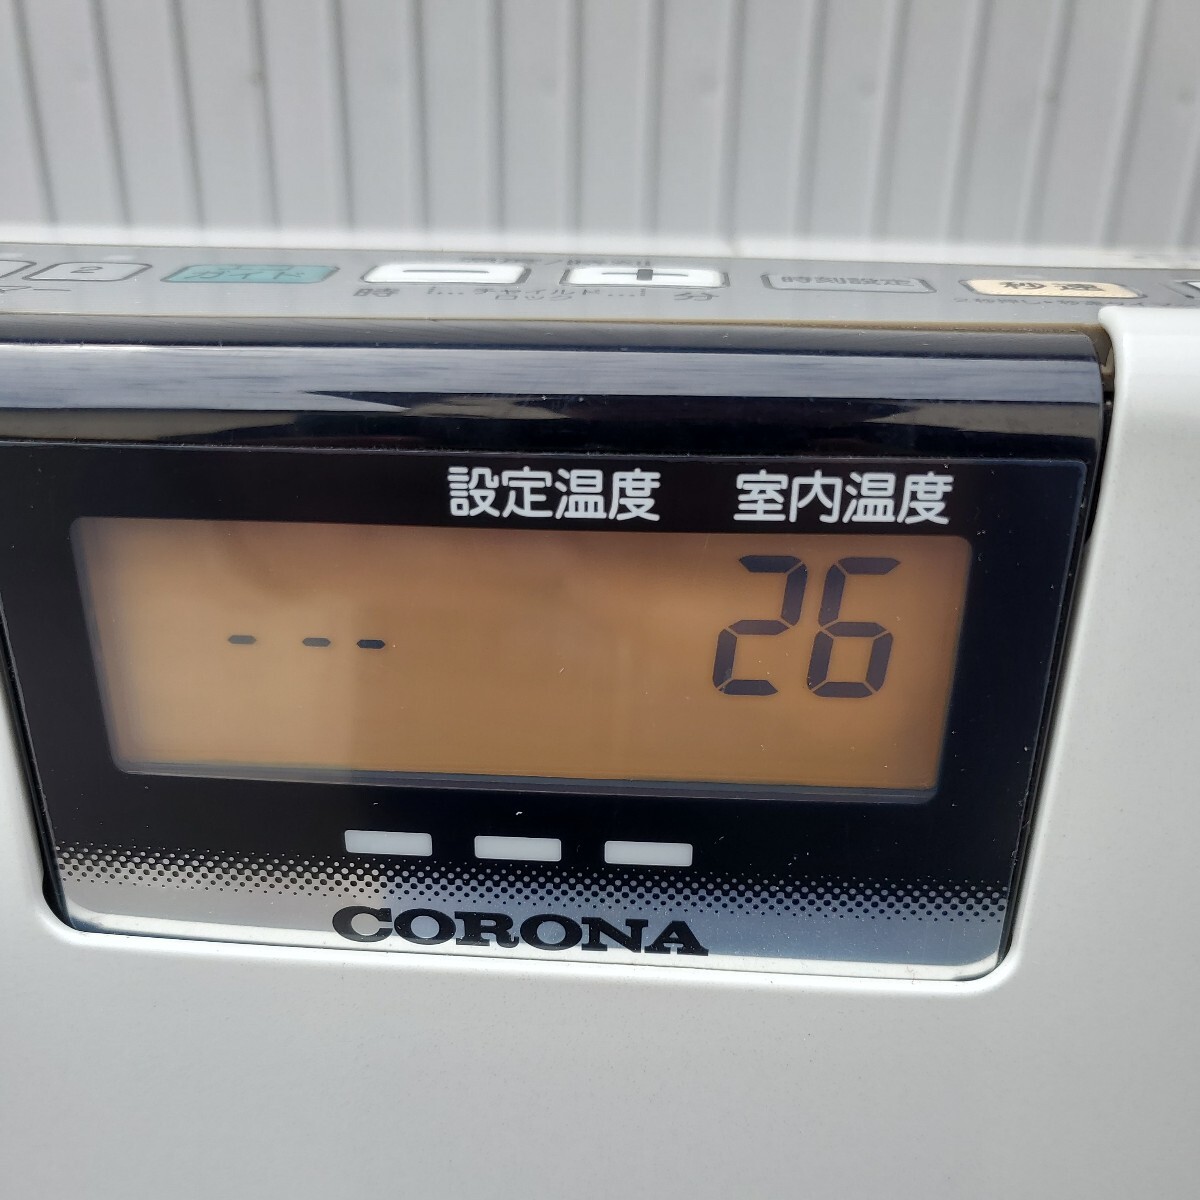  нагревательный прибор керосиновый тепловентилятор CORONA Corona FH-EX5714BY бак емкость 7.2L 14 год производства 